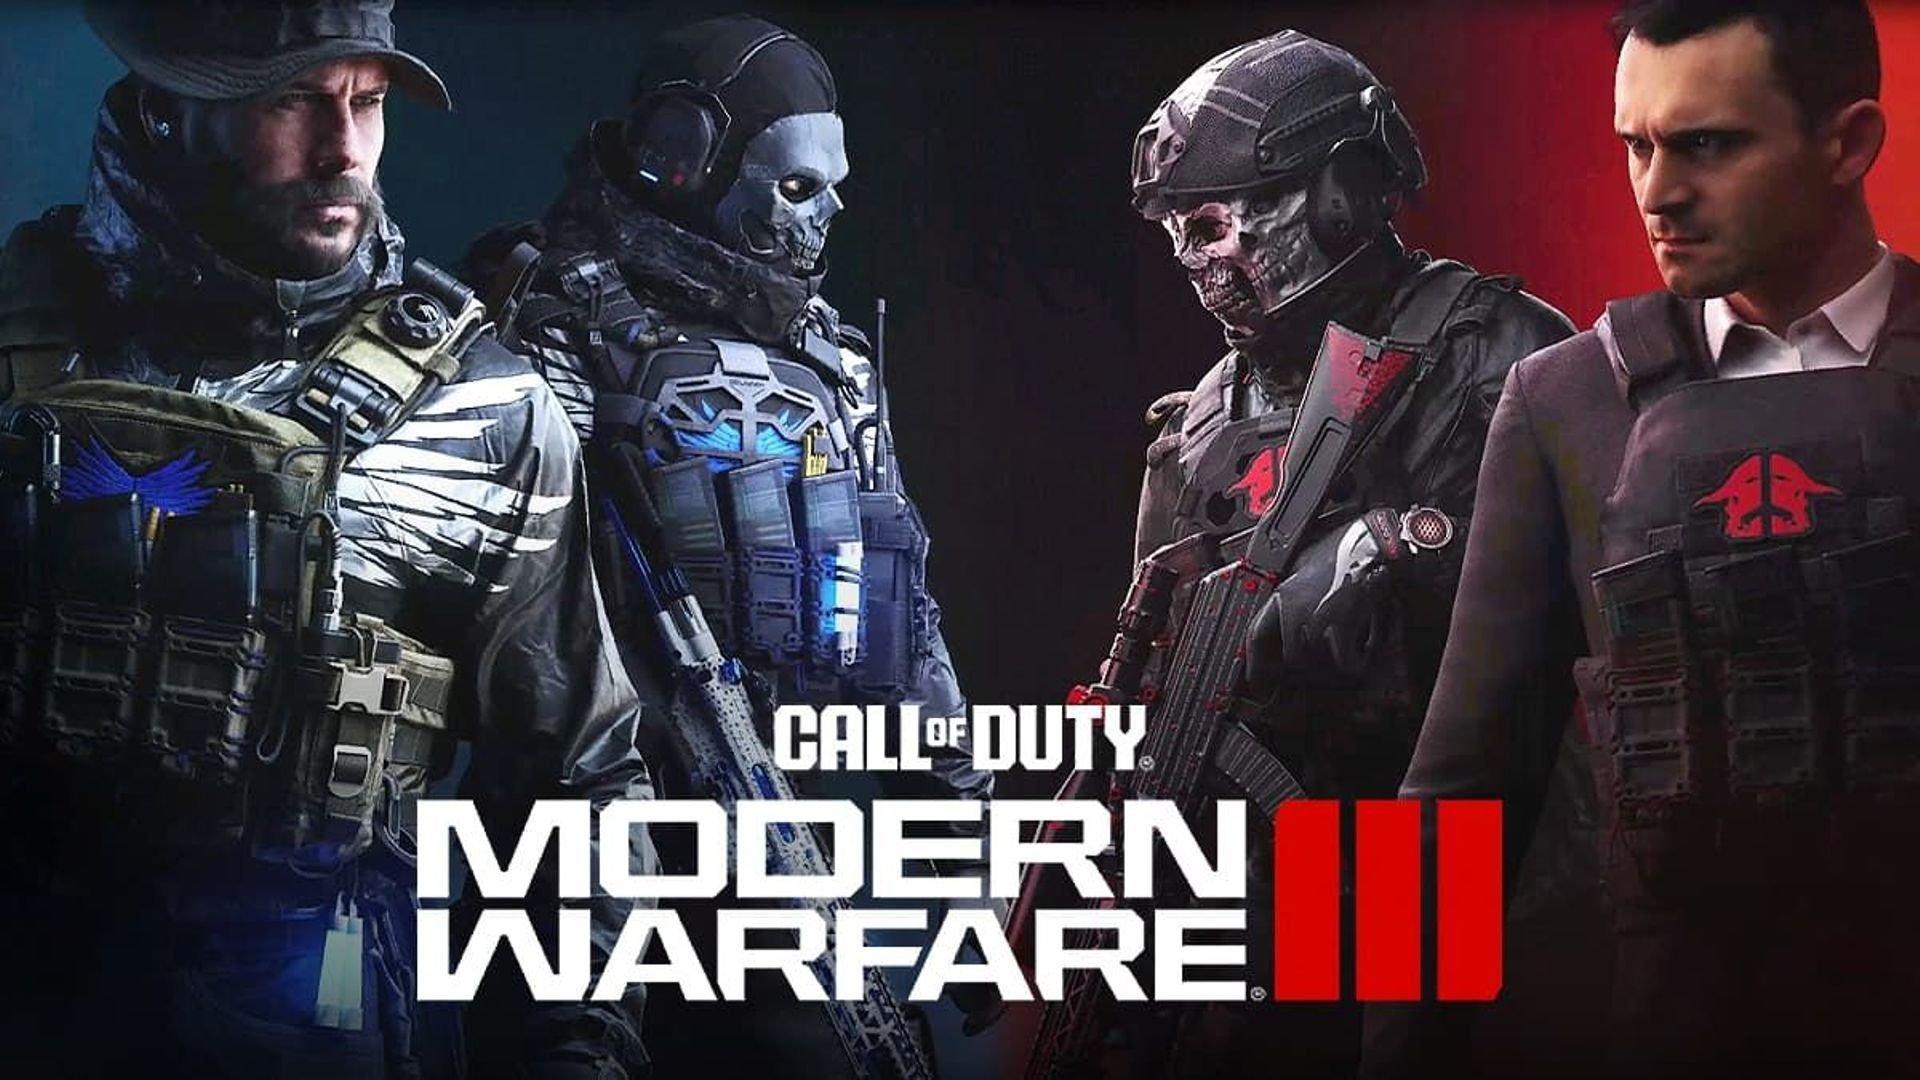 « Call of Duty Modern Warfare 3», un scénario riche, voire complexe, avec de multiples personnages. Activision